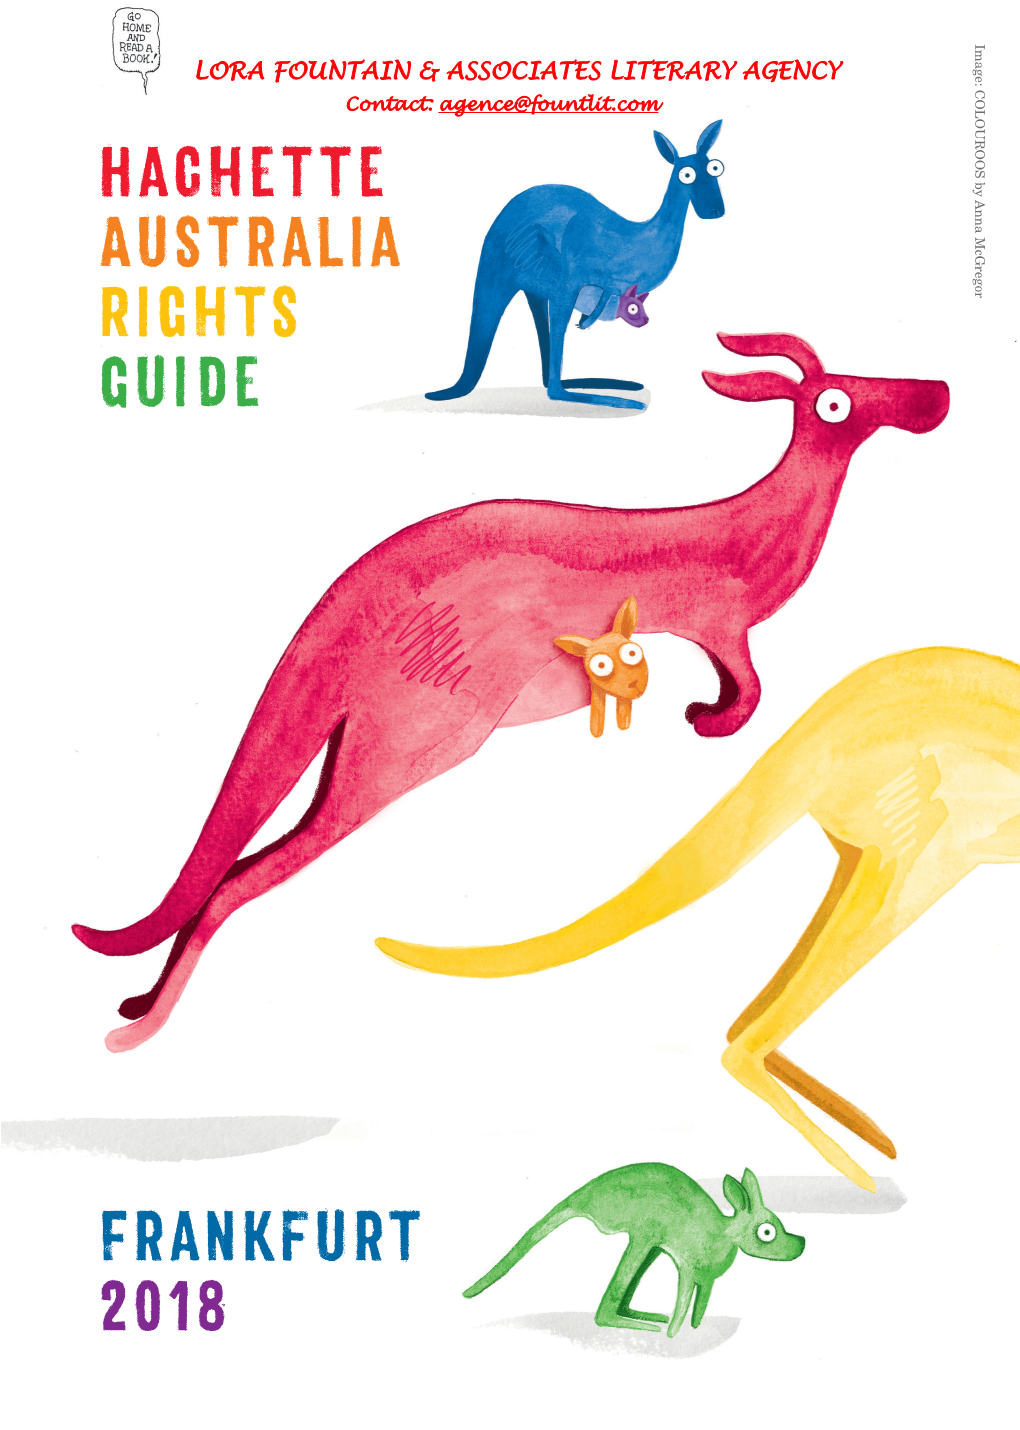 Hachette Australia Rights Guide